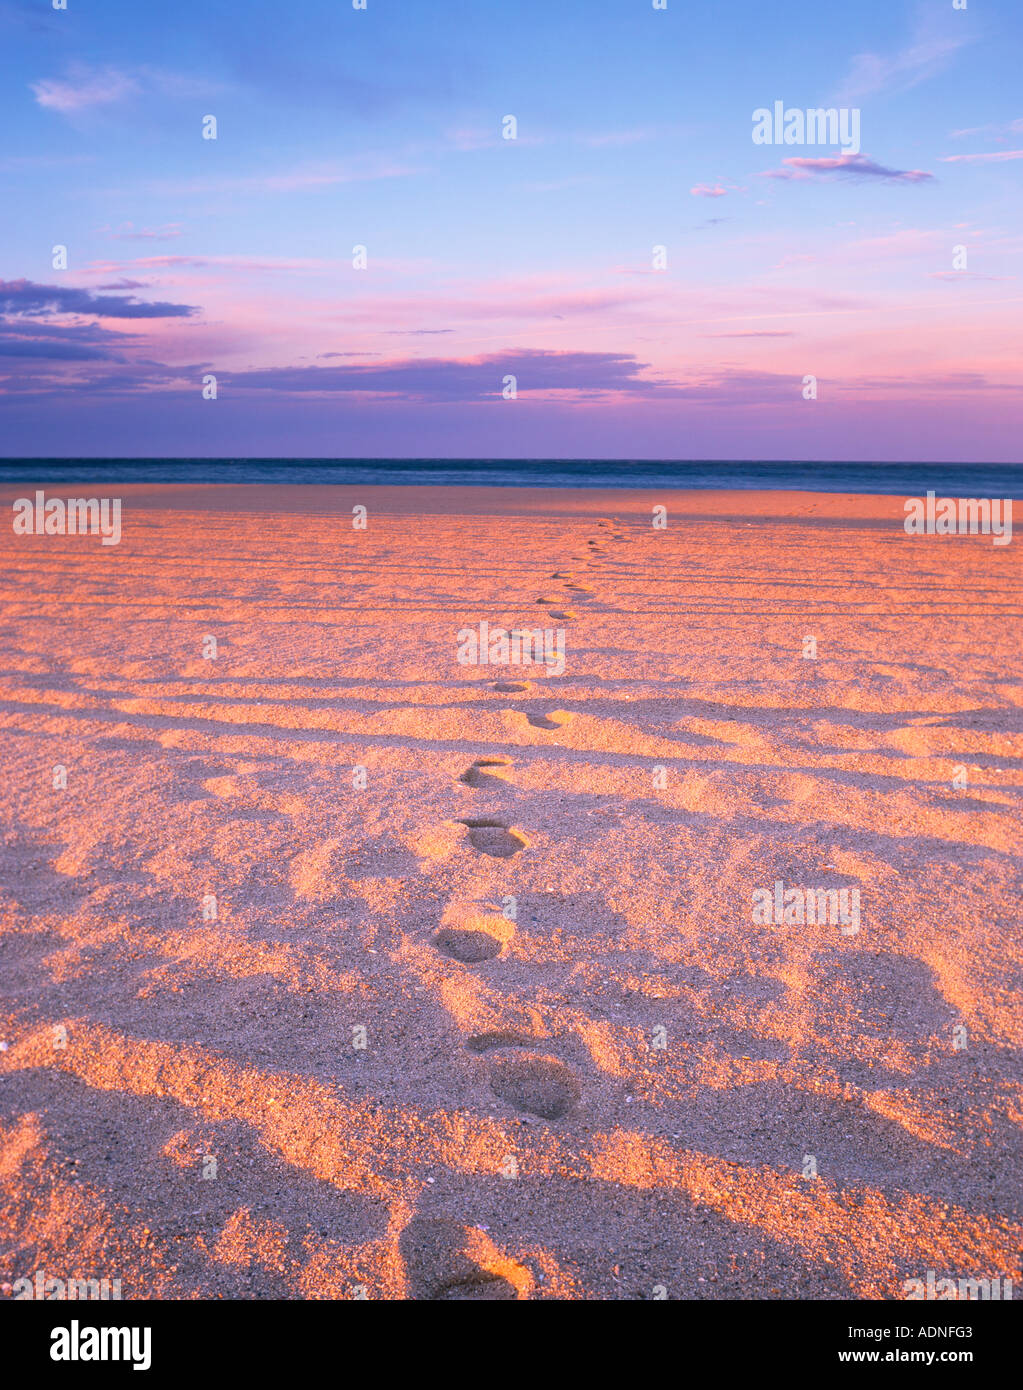 Fußspuren im Sand am Strand von Empuriabrava, Costa Brava, Katalonien, Nordspanien, Europa Stockfoto